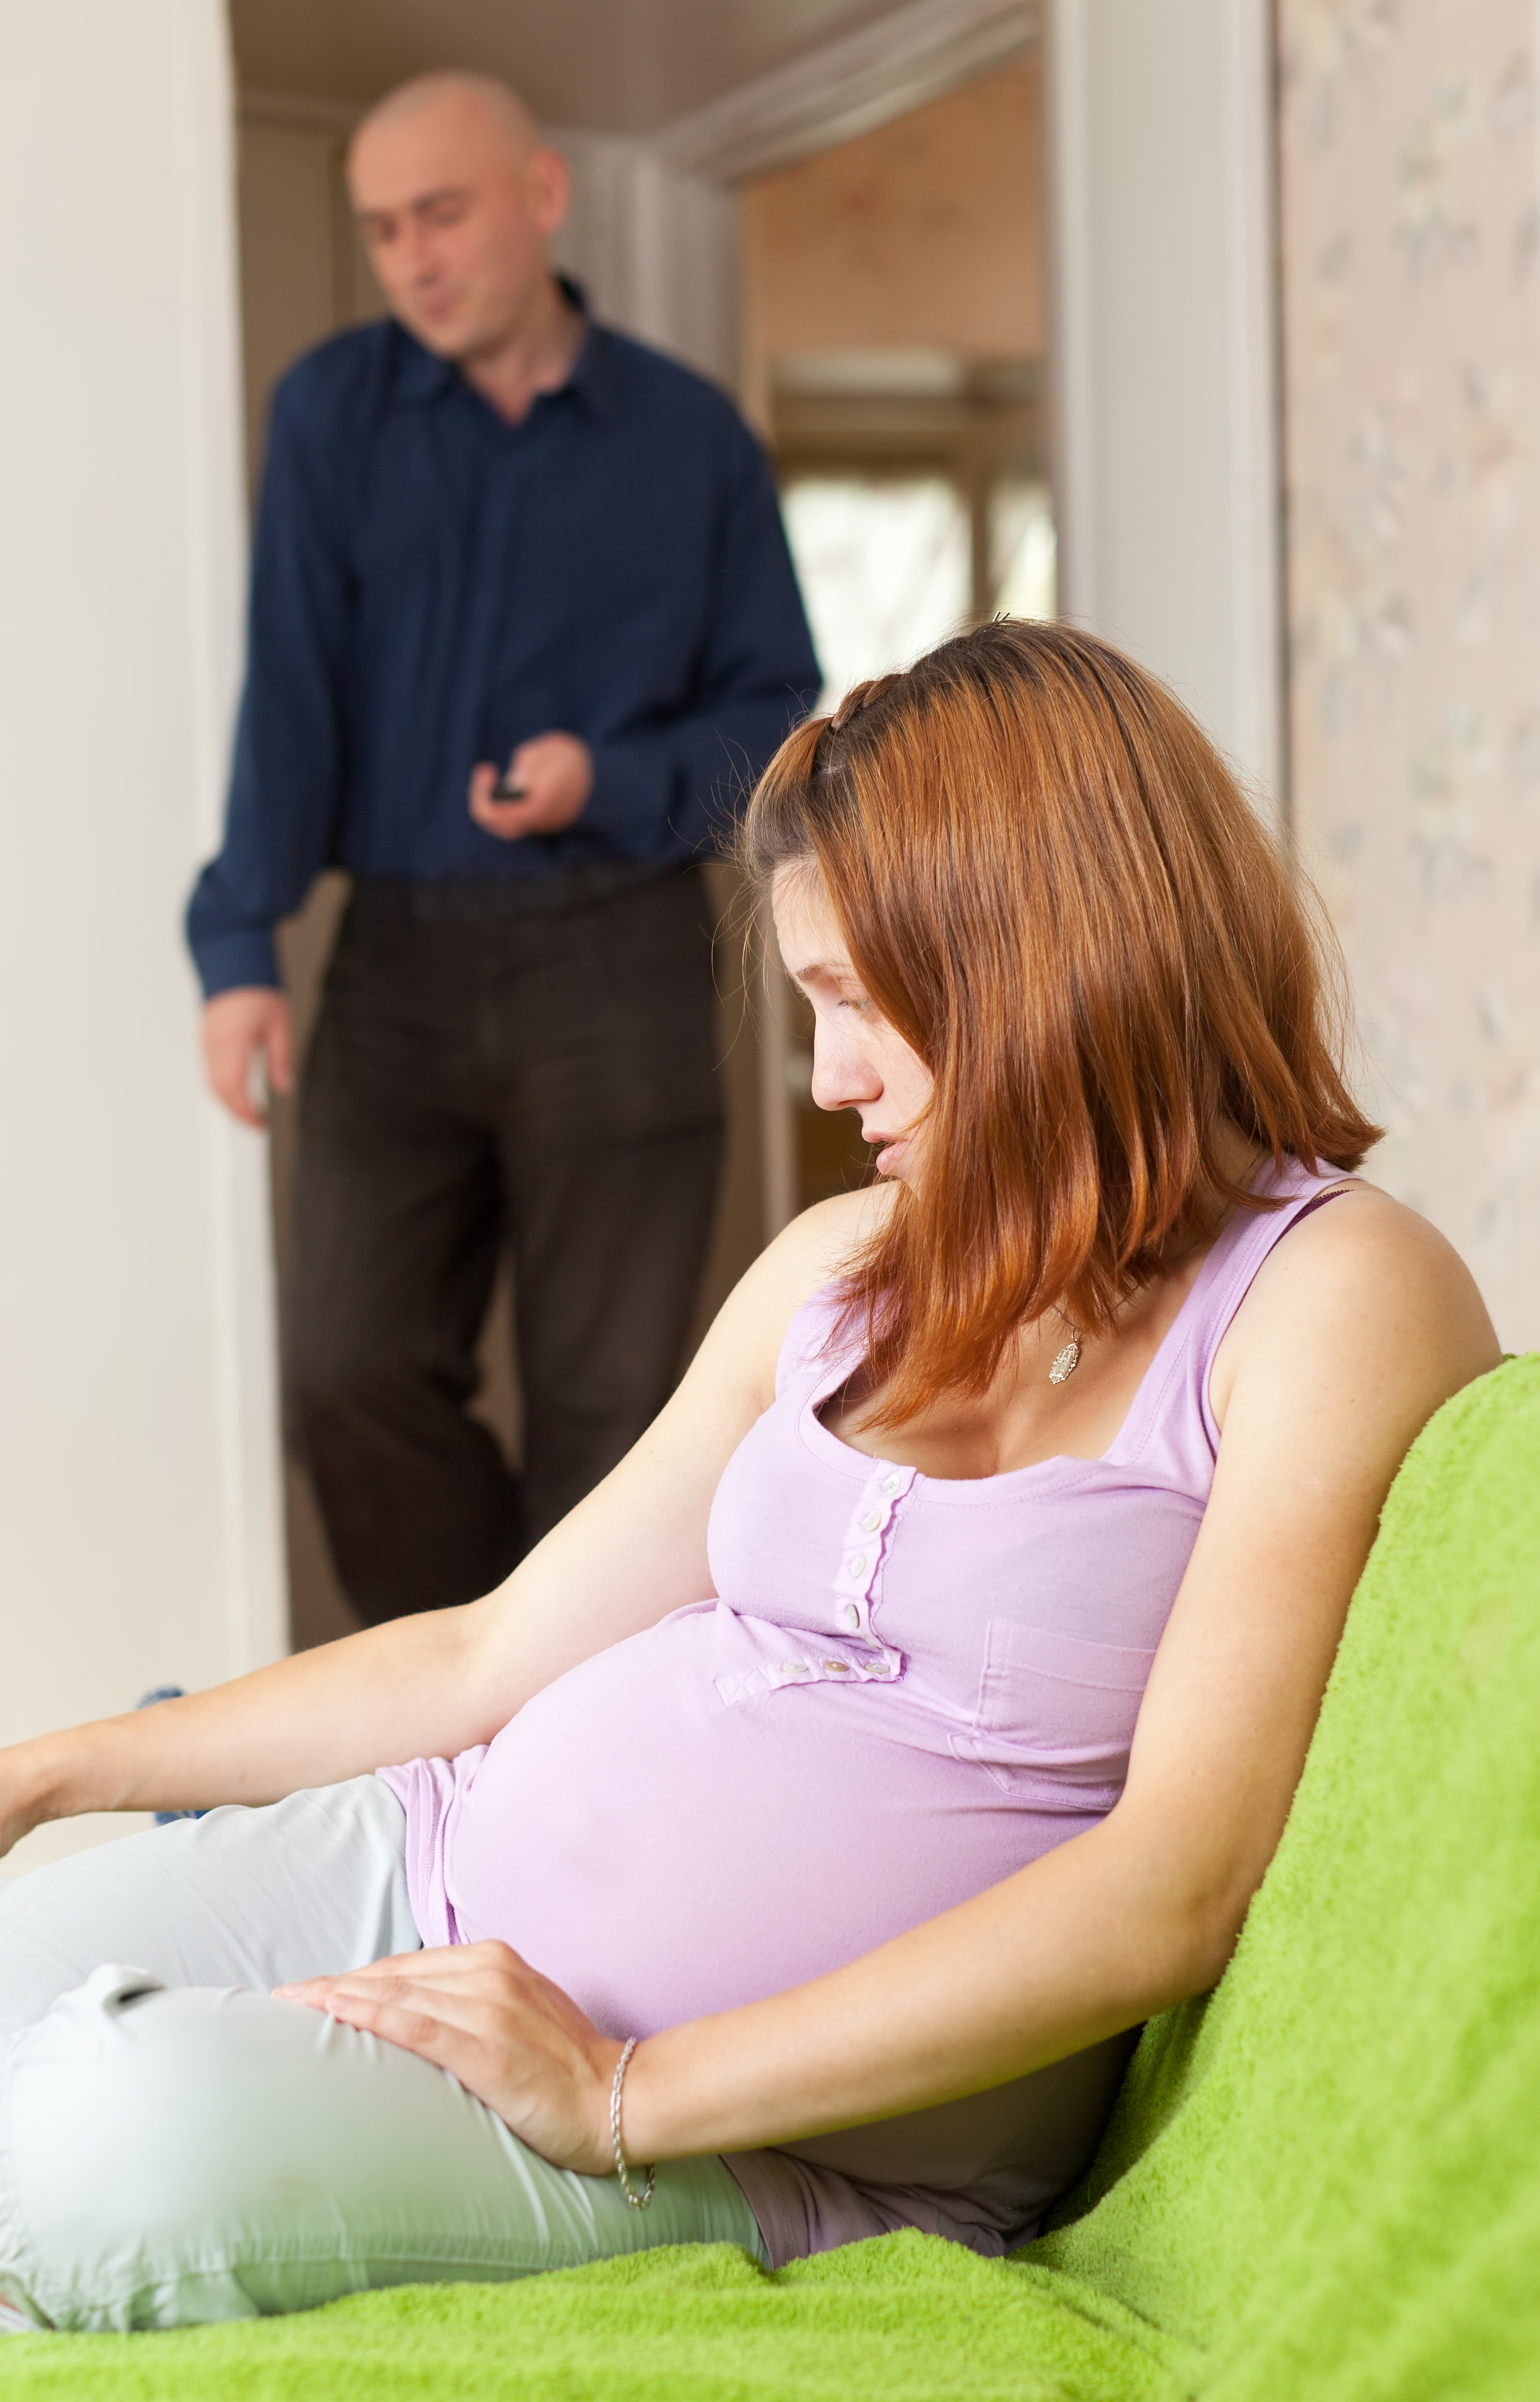 Une femme enceinte qui regarde vers le bas tandis qu'un homme regarde au loin en arrière-plan | Source : Shutterstock